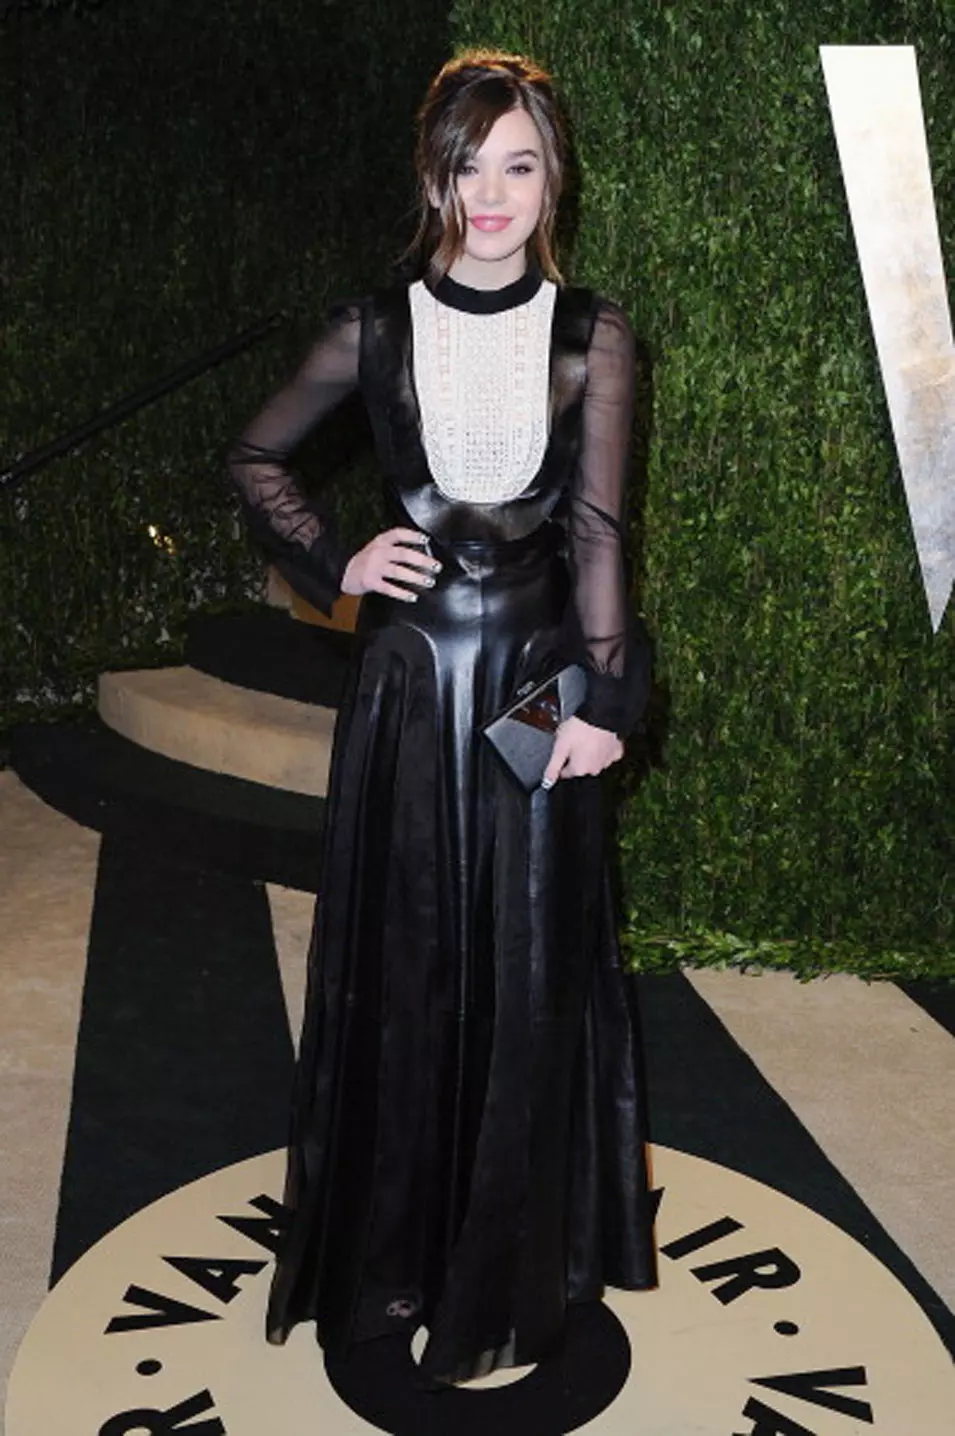 היילי סטיינפלד לובשת ולנטינו במסיבת וניטי פייר לאחר טקס האוסקר, הוליווד, 24 פברואר 2013